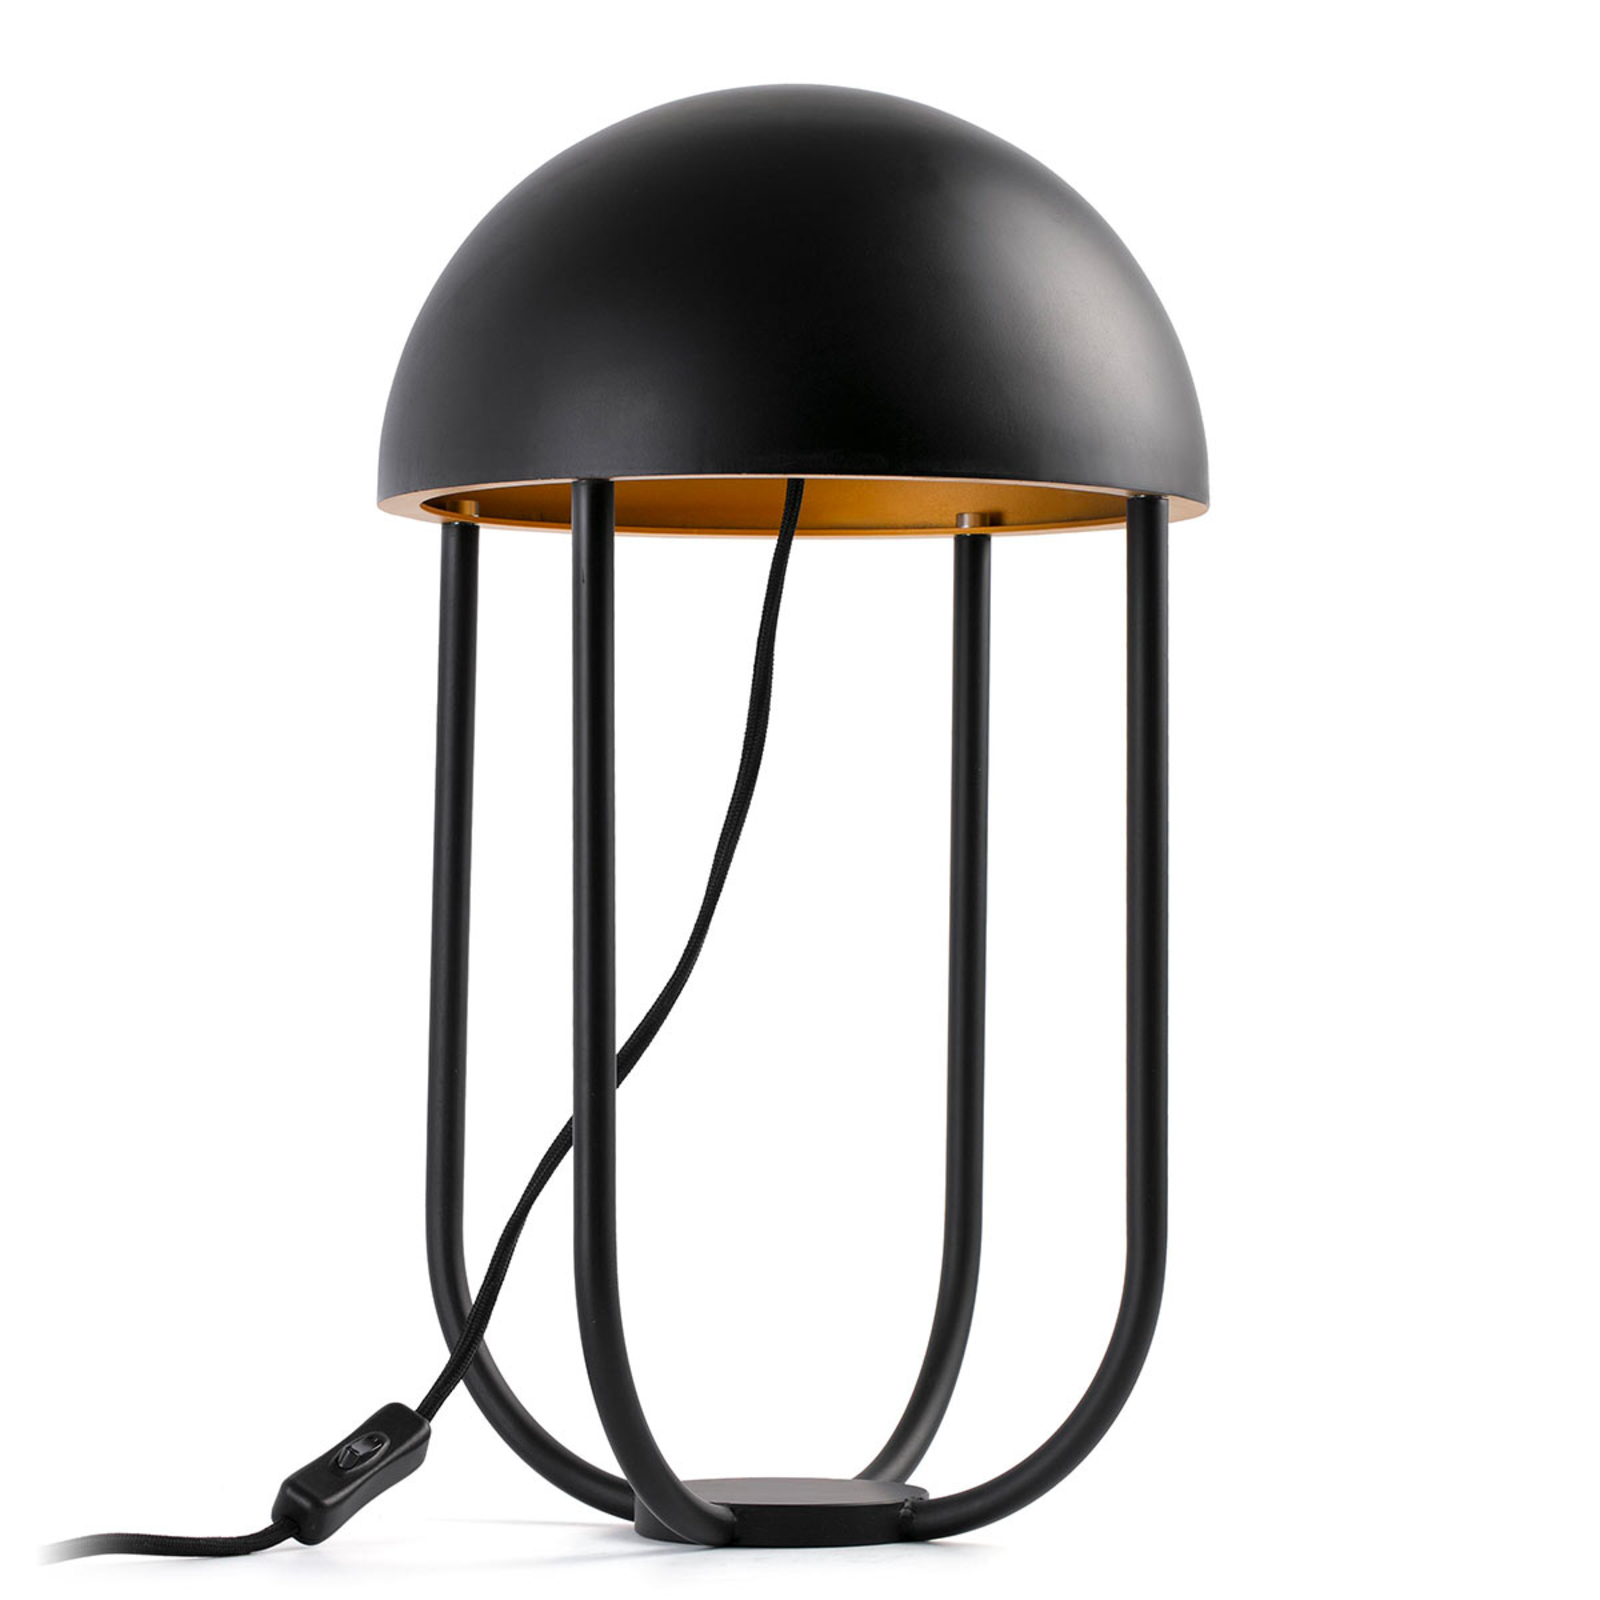 Fantasierijk vormgegeven tafellamp Jellyfish